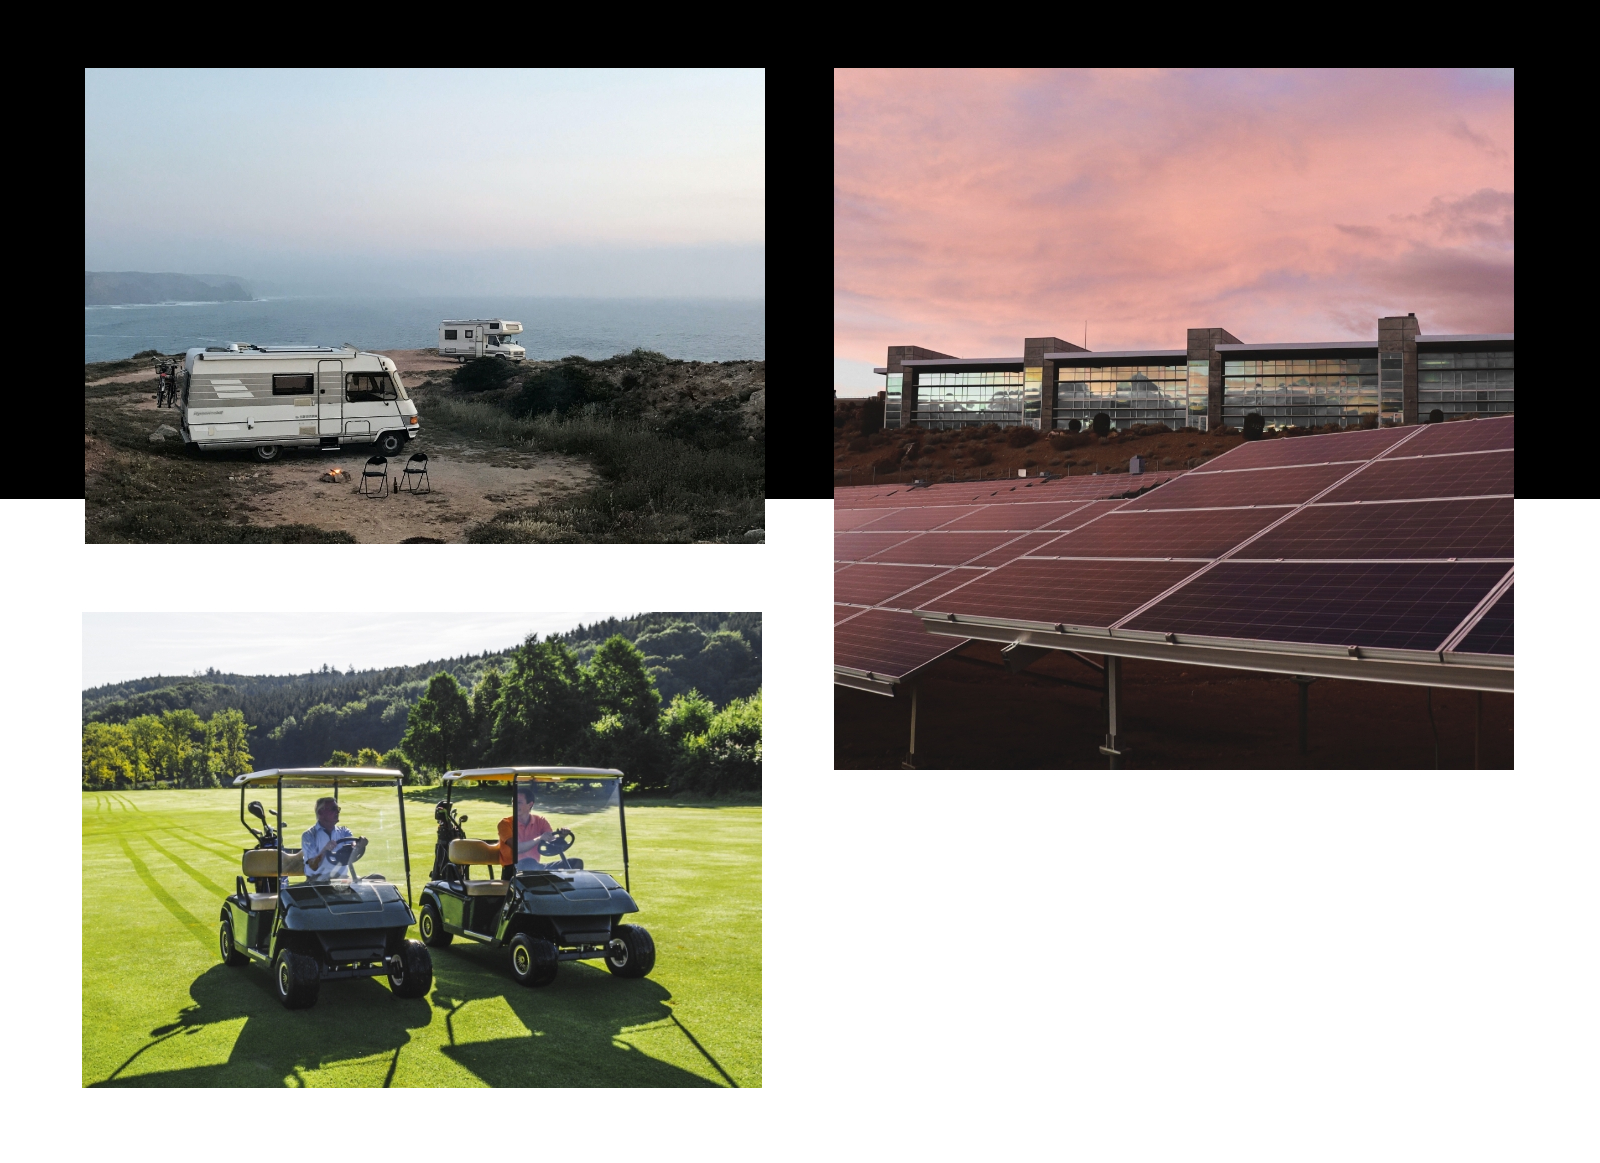 Grafika jest podzielona na 3 części i przedstawia: dwa kampery na tle morza, 2 wózki golfowe oraz farmę paneli fotowoltaicznych.